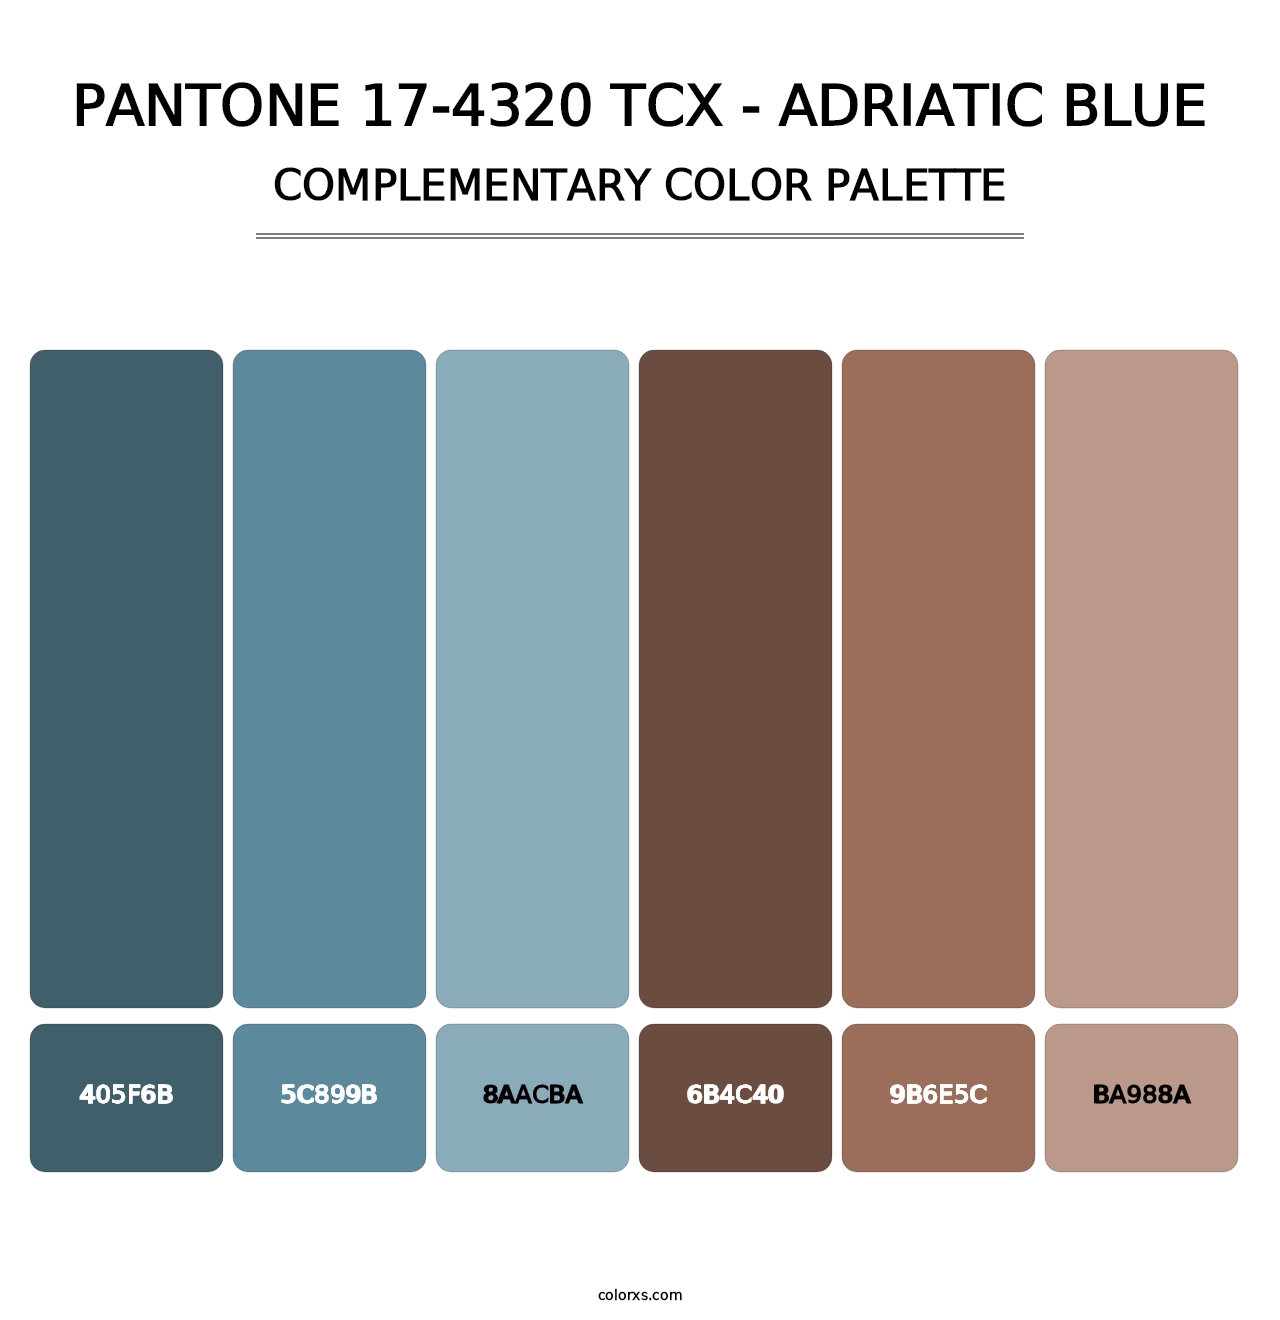 PANTONE 17-4320 TCX - Adriatic Blue - Complementary Color Palette